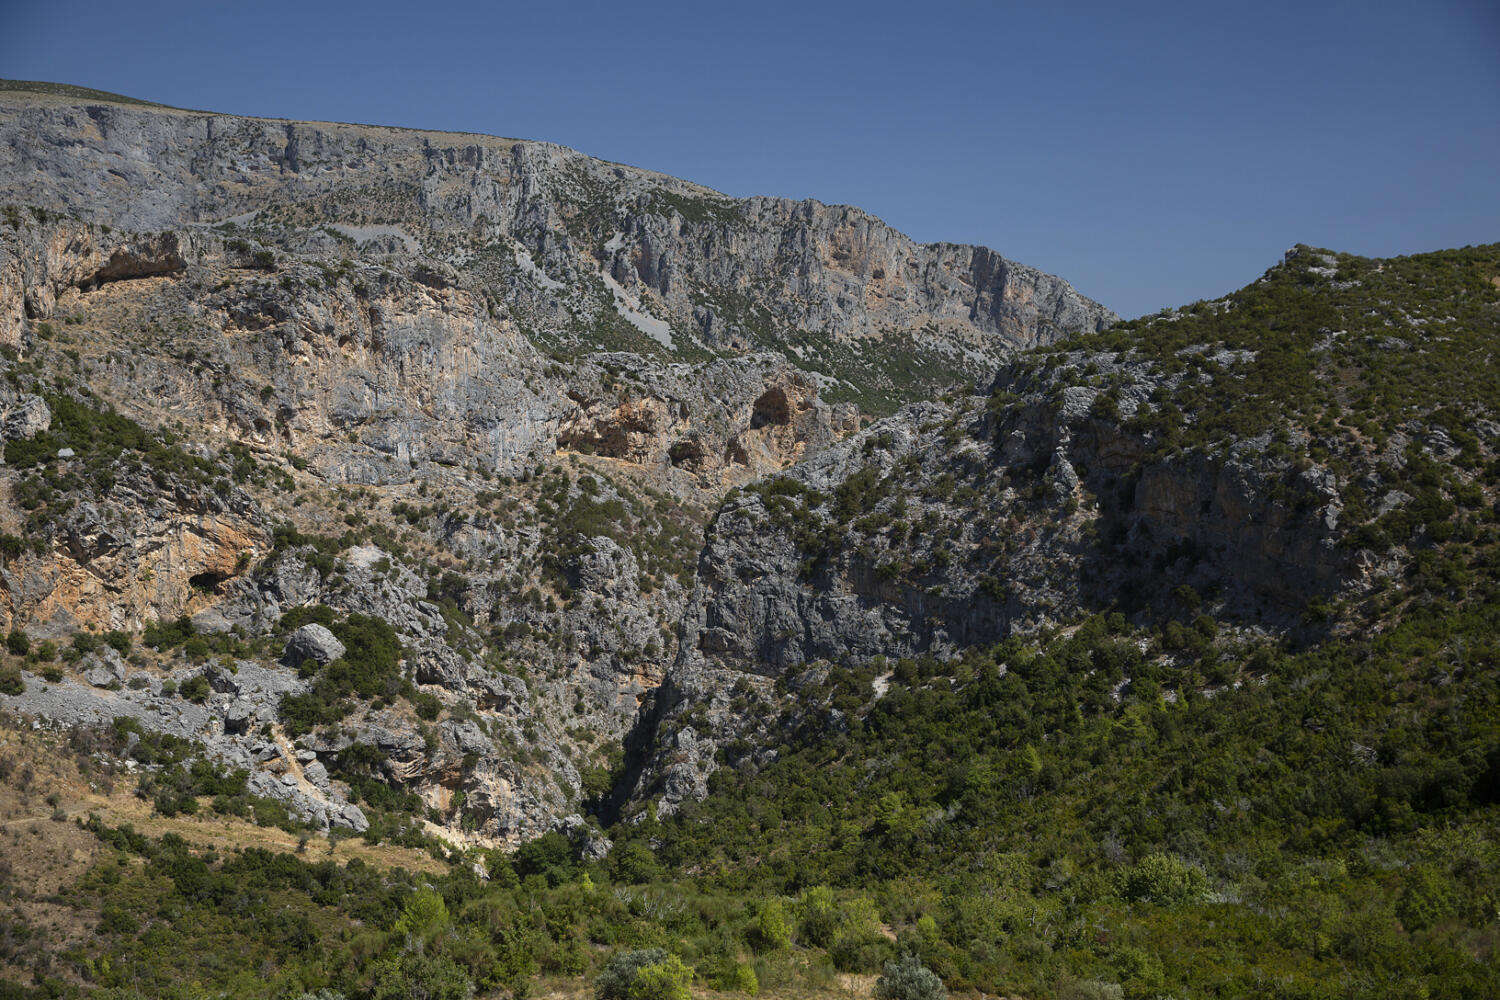 Περιοχή Σπηλιές ή Φούρνοι, χωριό Μακρυχώρι. Φωτογραφία: ©Βασίλης Συκάς, για τον Δήμο Κύμης-Αλιβερίου